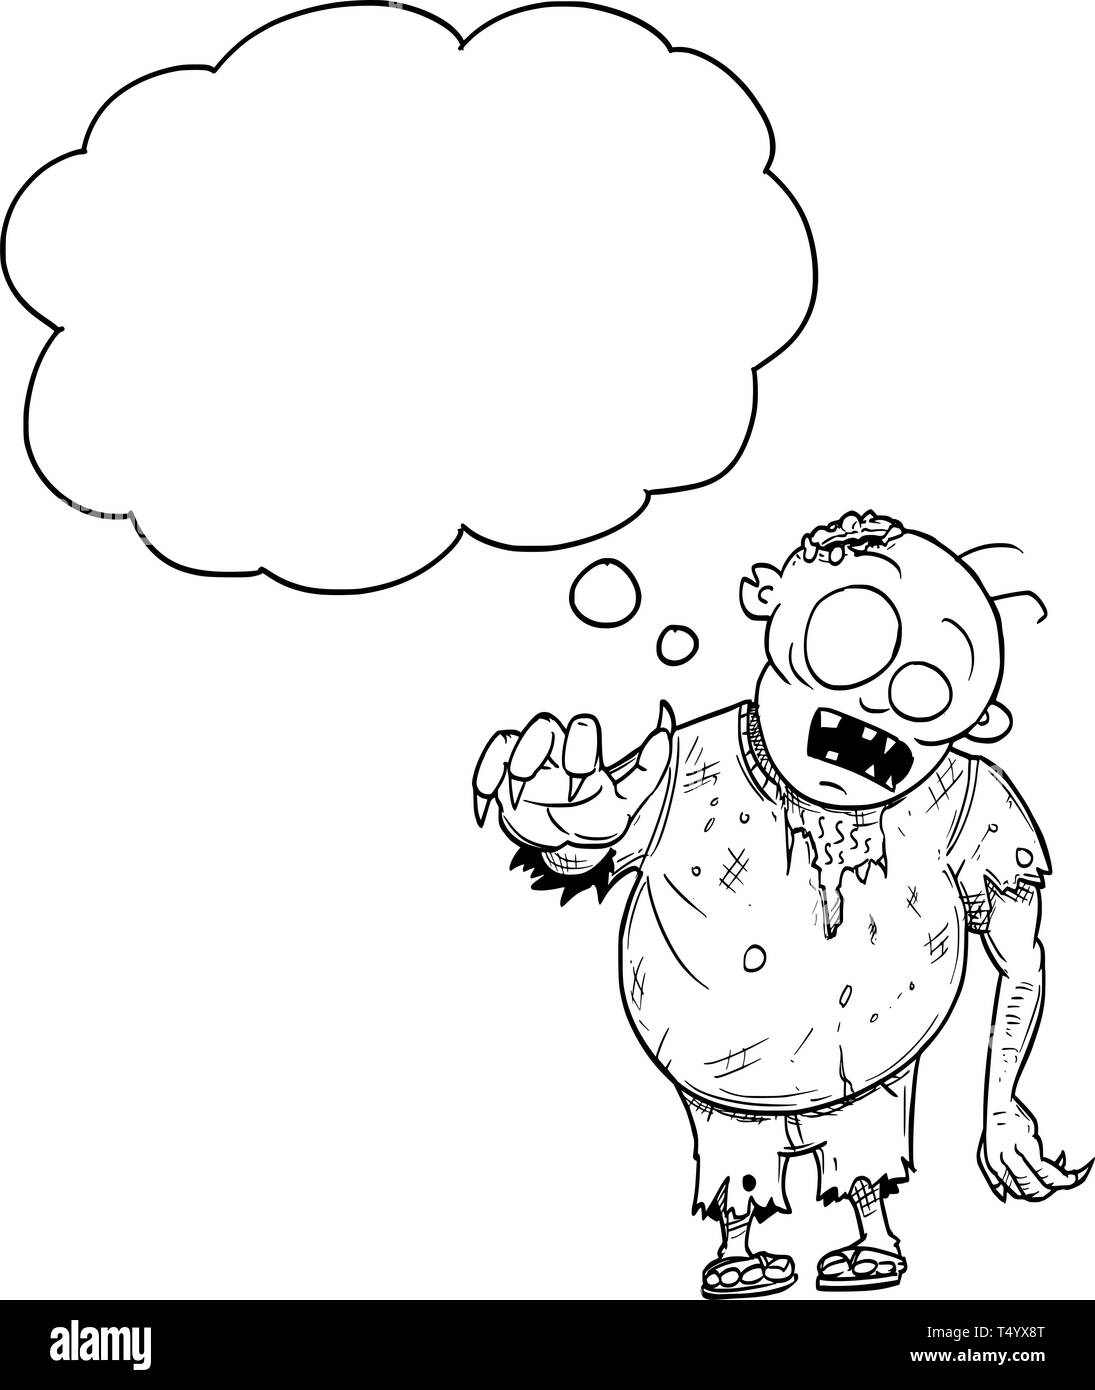 Cartoon Zeichnung konzeptuelle Abbildung: Fat crazy Halloween Monster Zombie mit leeren Sprechblase oder Sprechblase. Stock Vektor